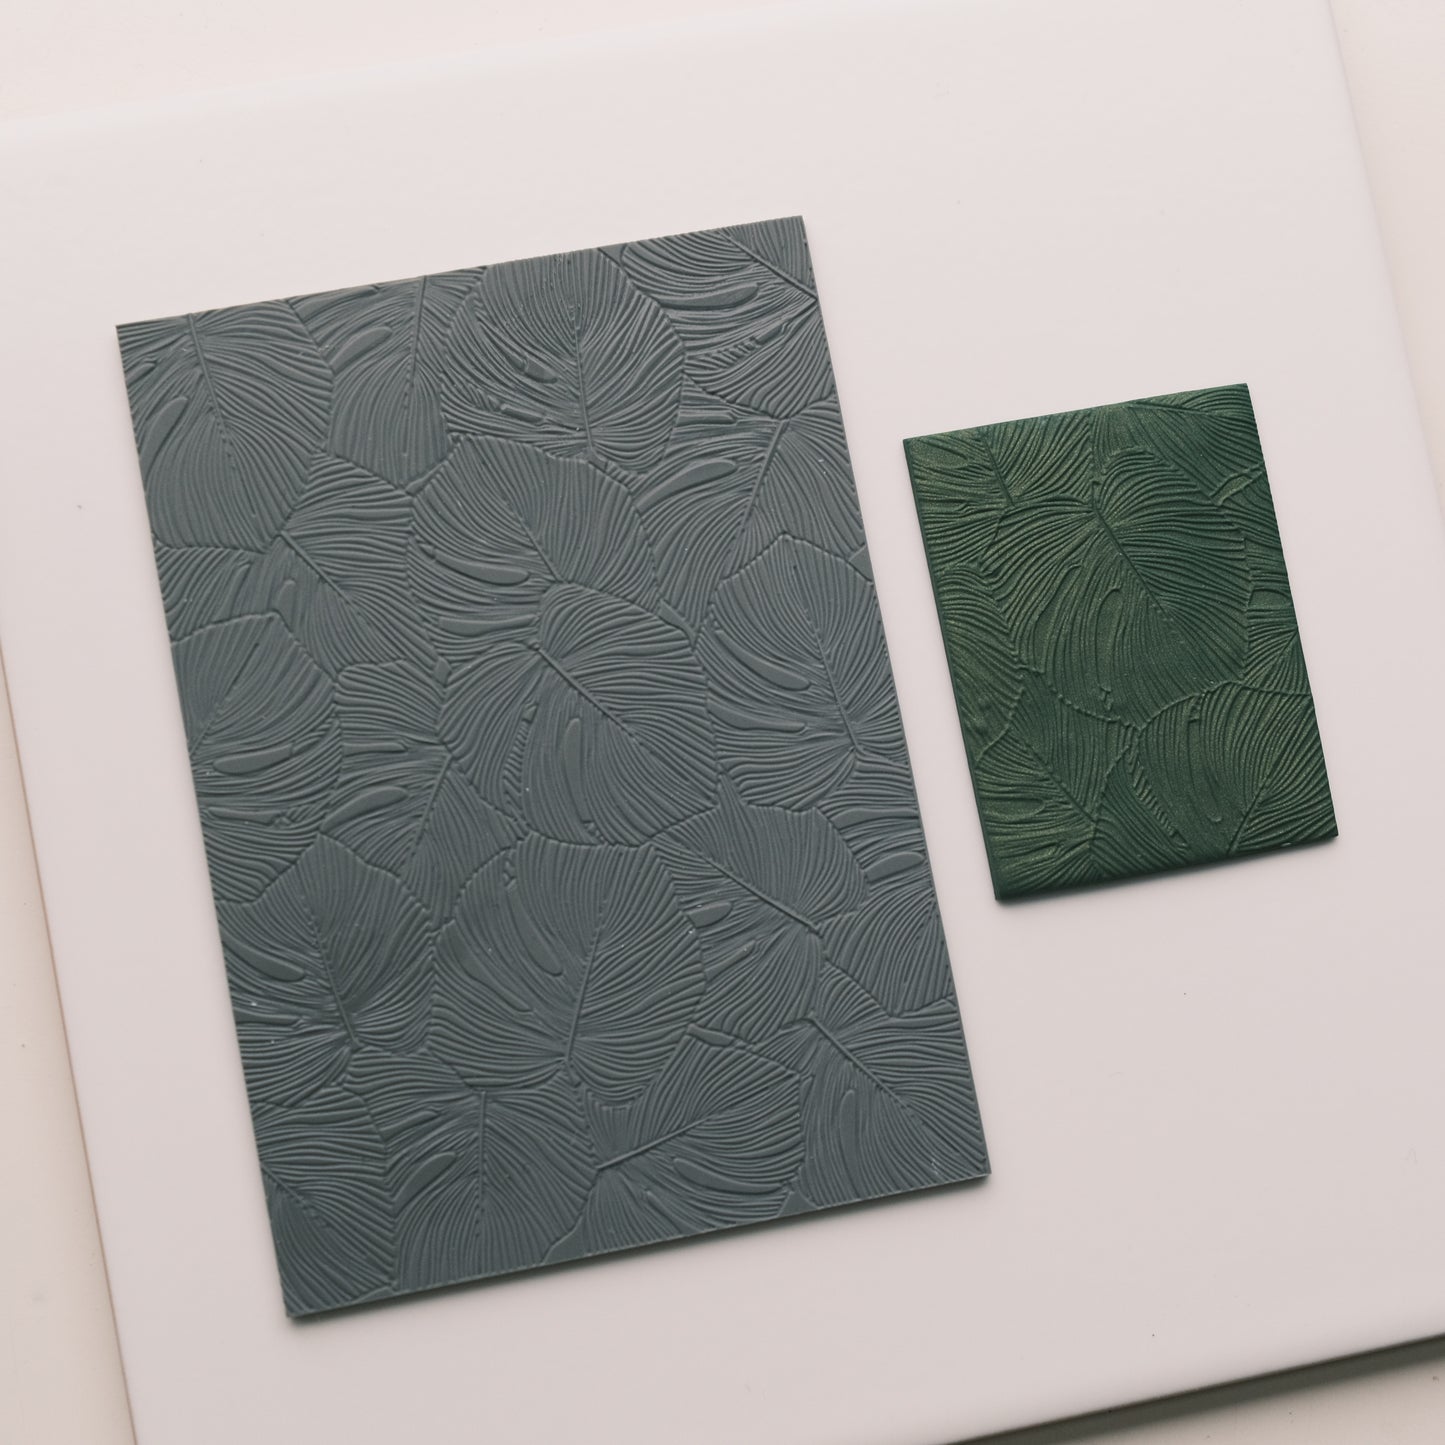 kowanii Embossed Texture Silicone Mold Fondant Pattern Mat